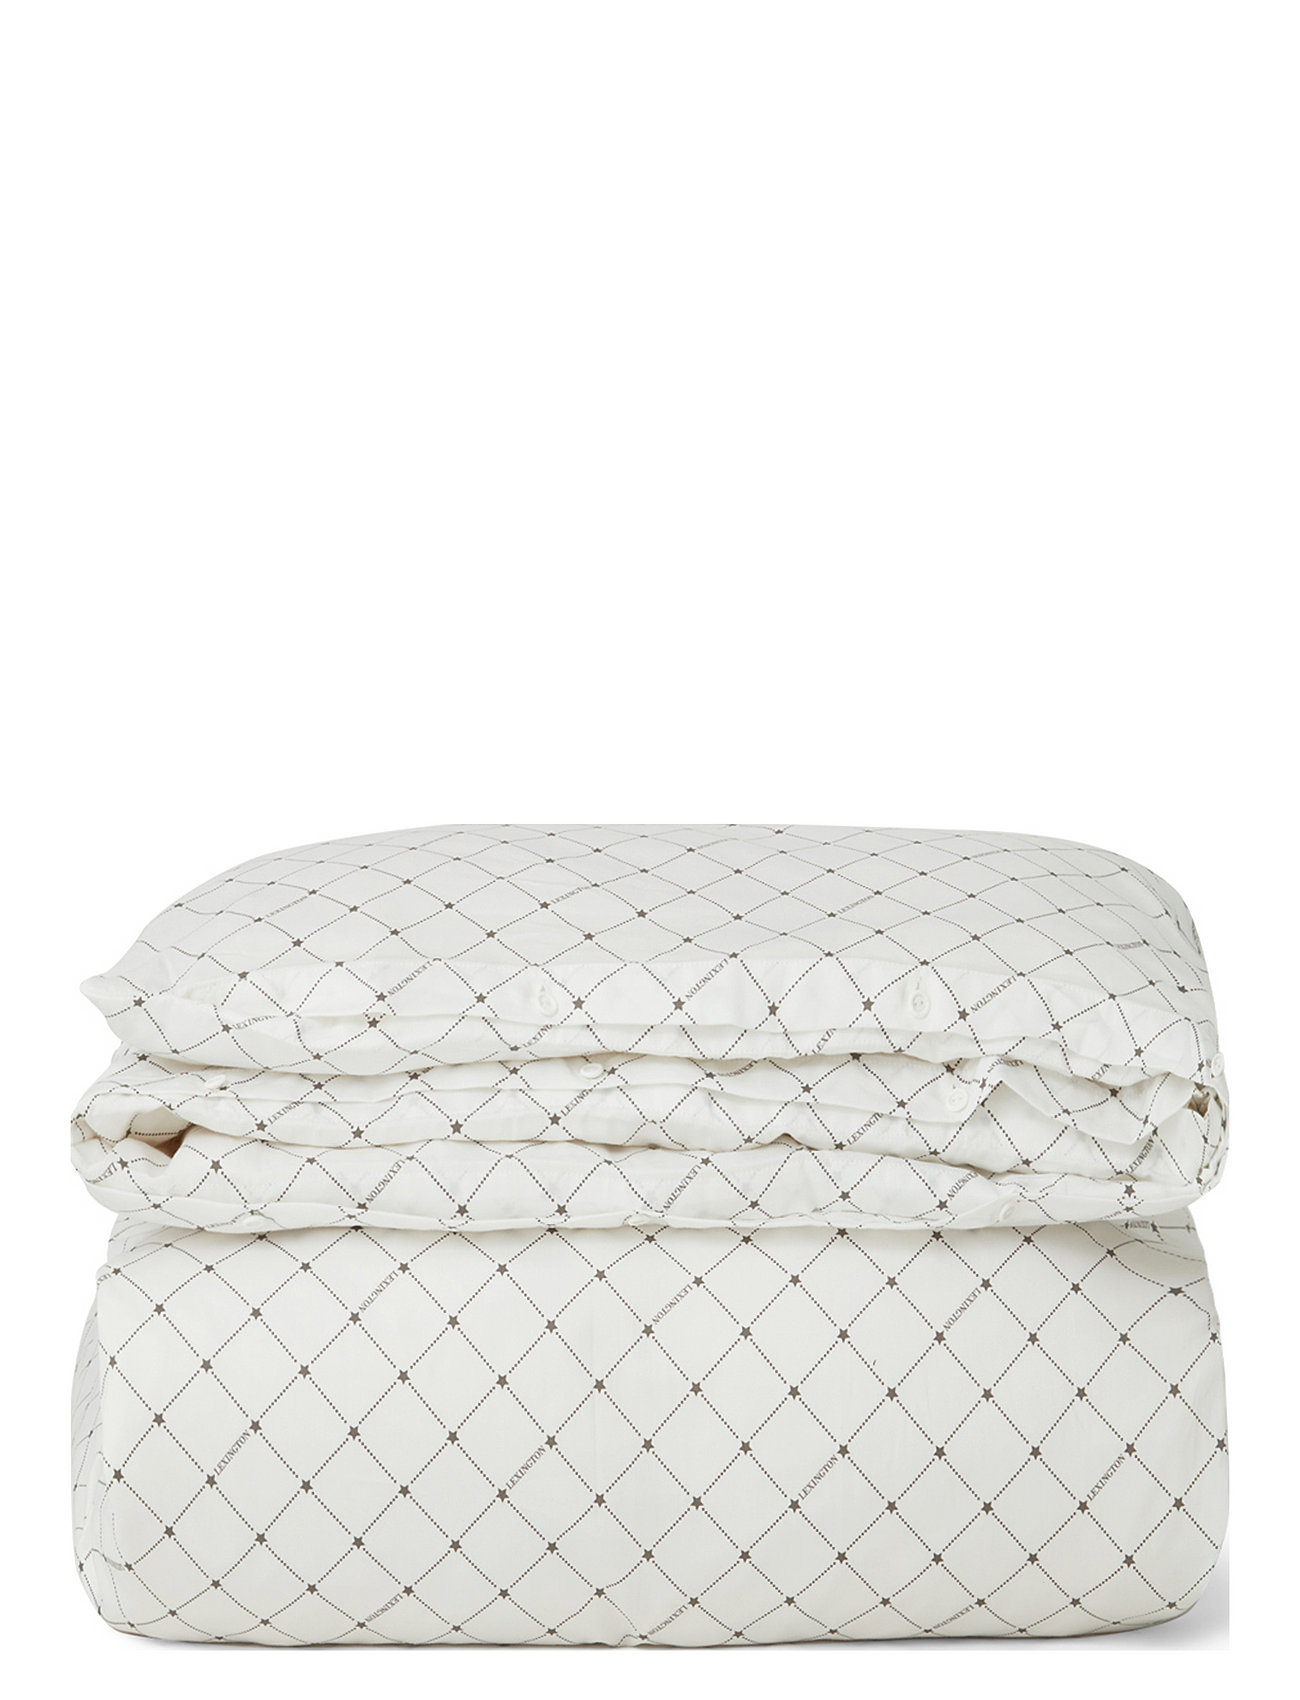 White/Gray Signature Star Sateen Duvet Cover Home Textiles Bedtextiles Duvet Covers White Lexington Home